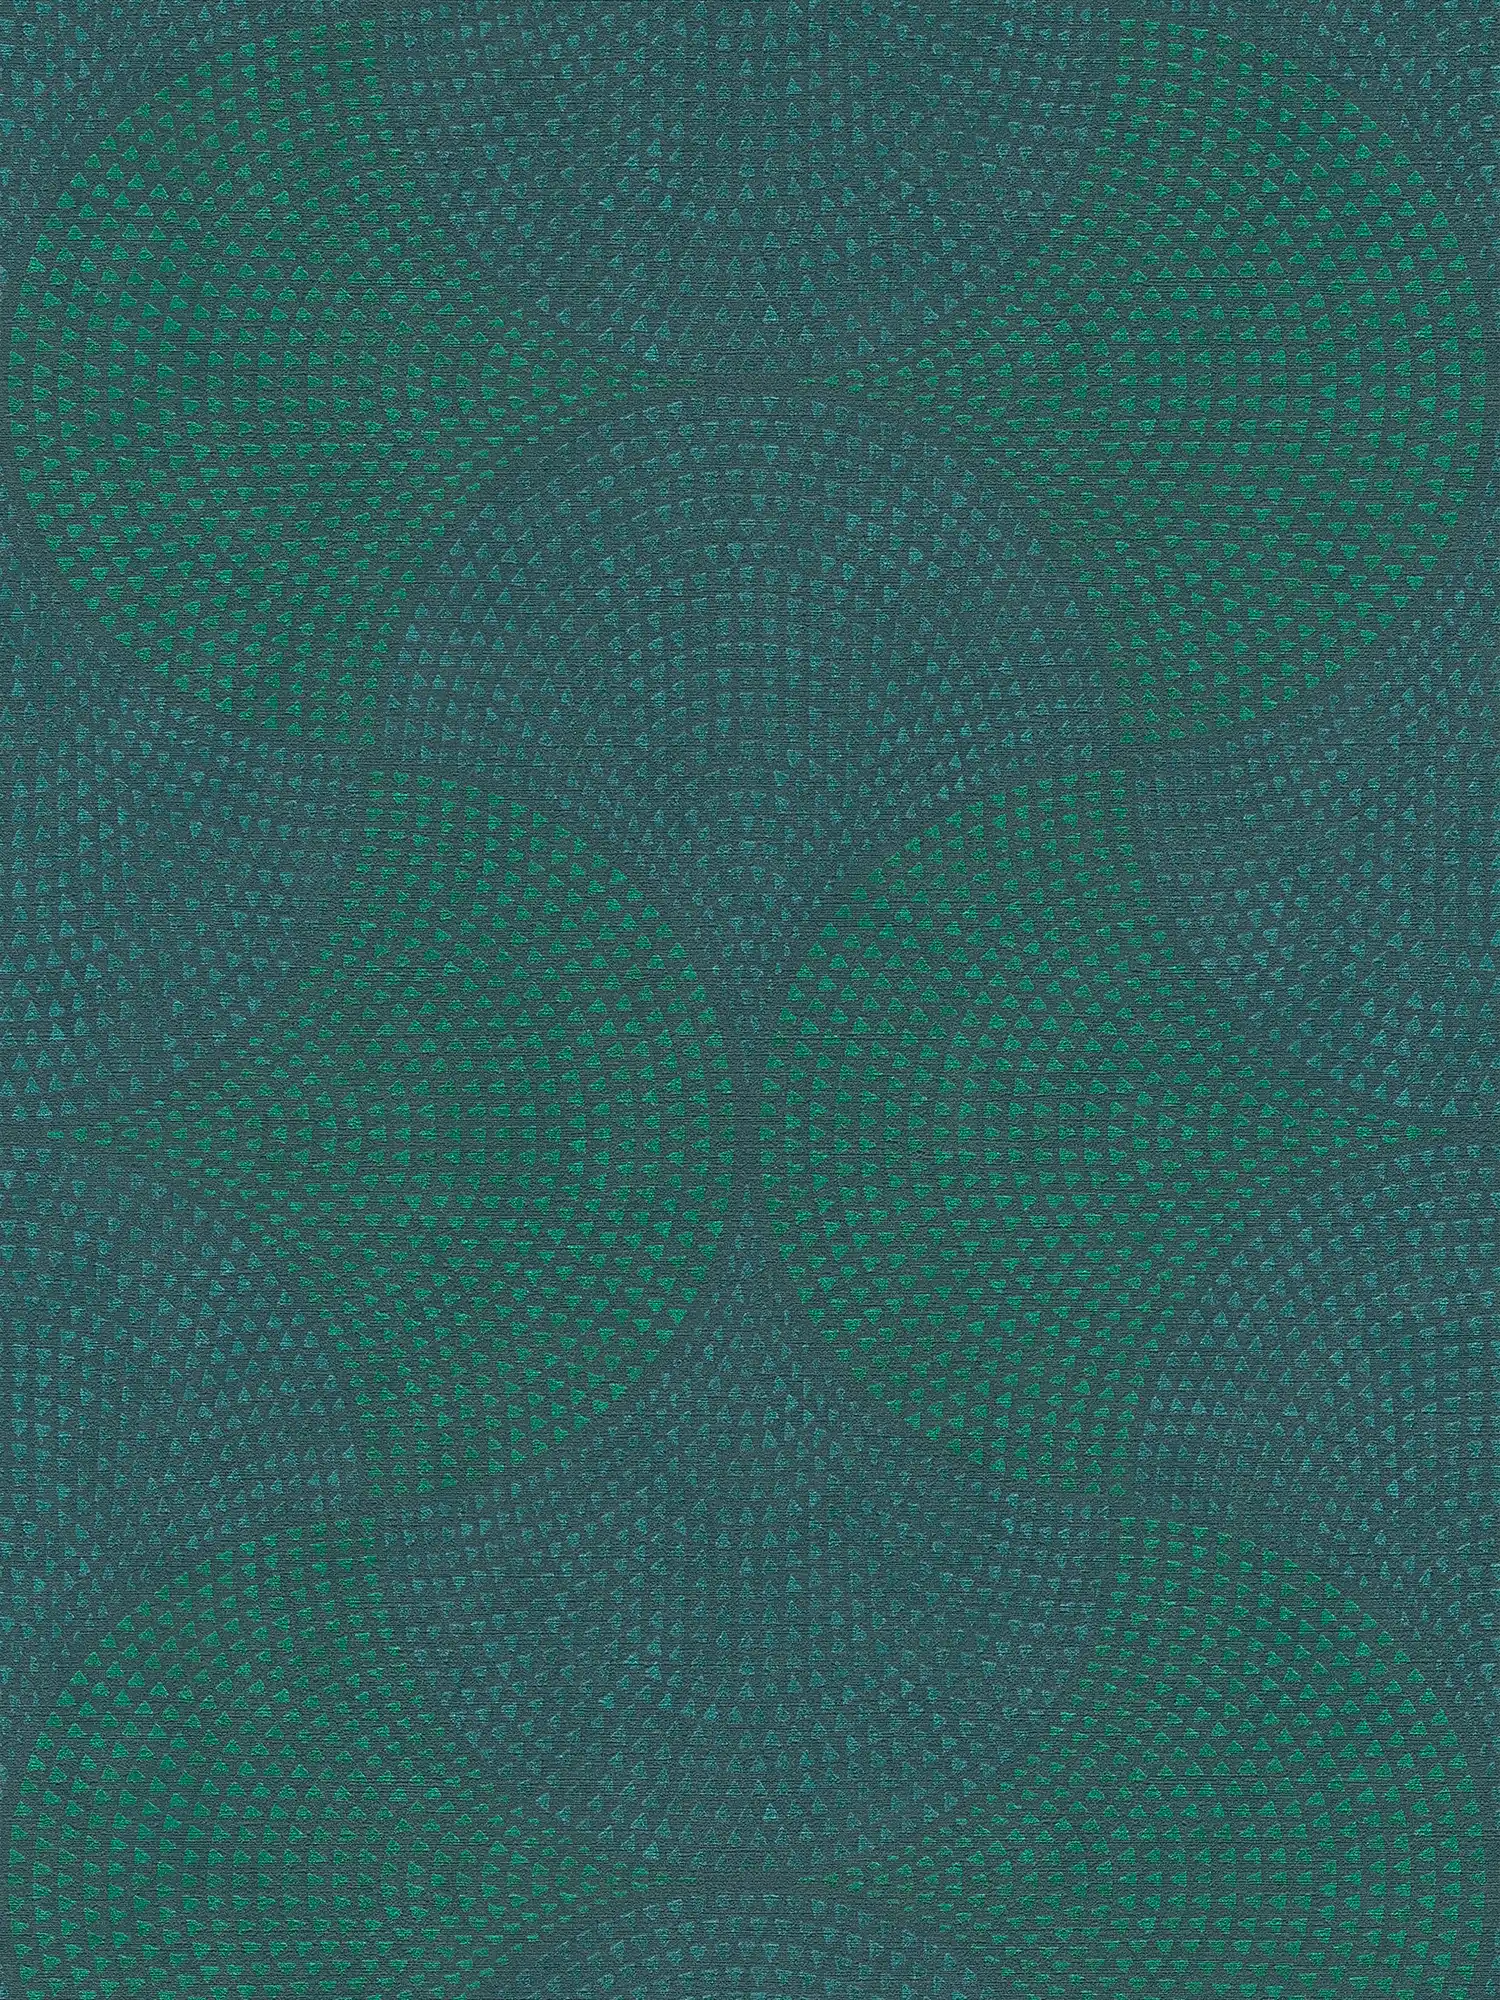 Carta da parati in tessuto non tessuto metallizzata con motivo a mosaico - blu, verde, metallizzato
